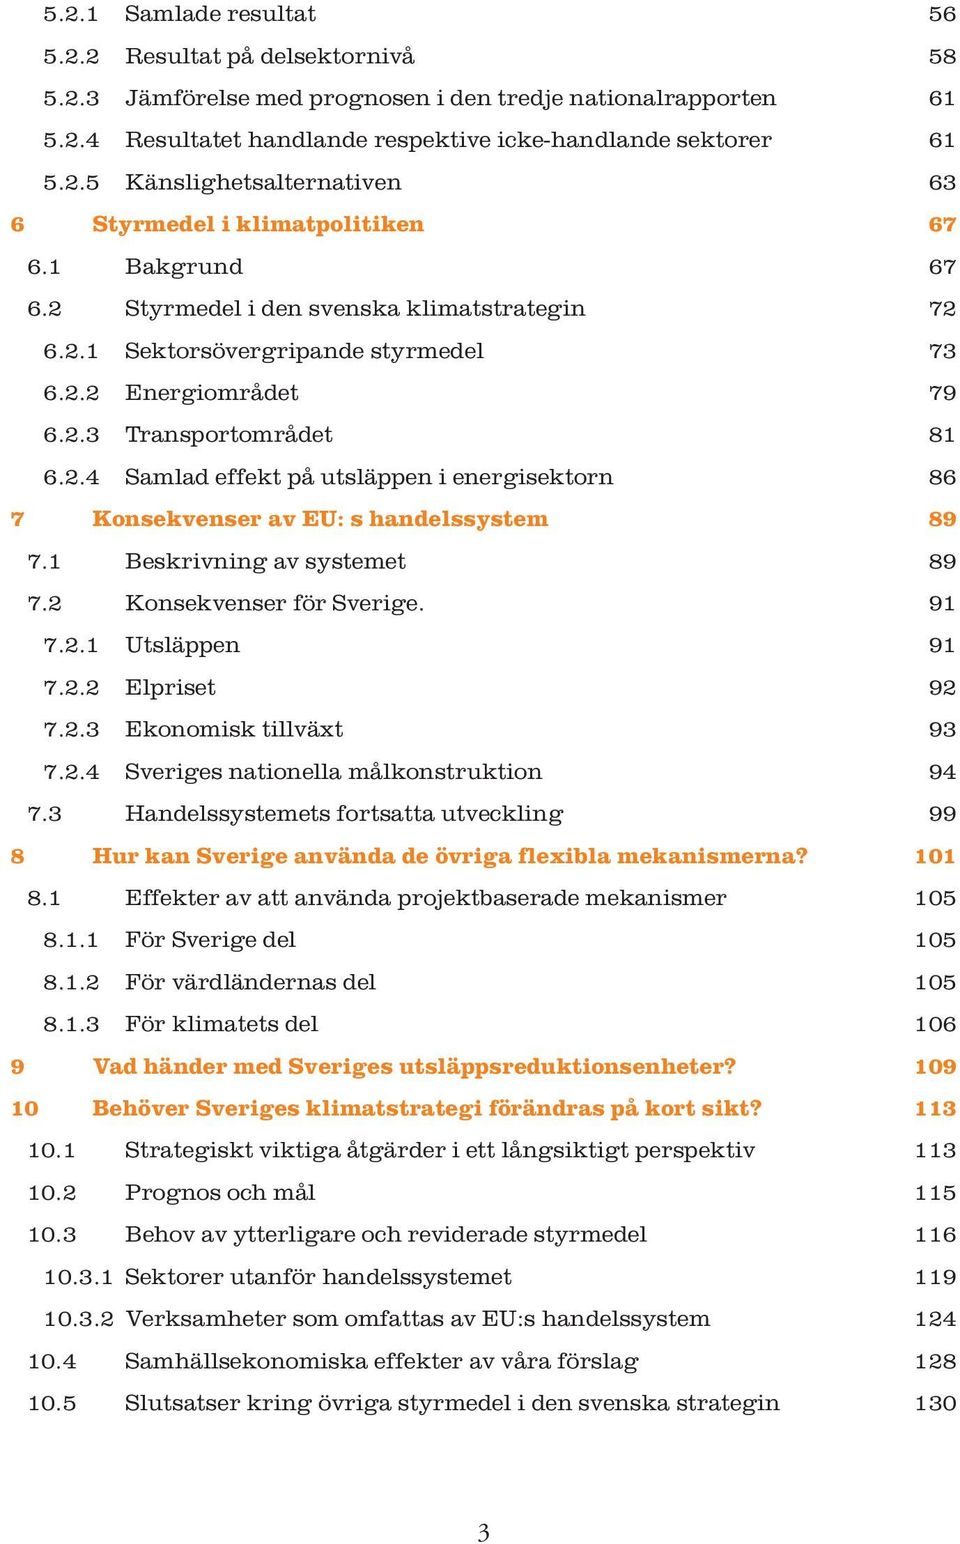 1 Beskrivning av systemet 89 7.2 Konsekvenser för Sverige. 91 7.2.1 Utsläppen 91 7.2.2 Elpriset 92 7.2.3 Ekonomisk tillväxt 93 7.2.4 Sveriges nationella målkonstruktion 94 7.